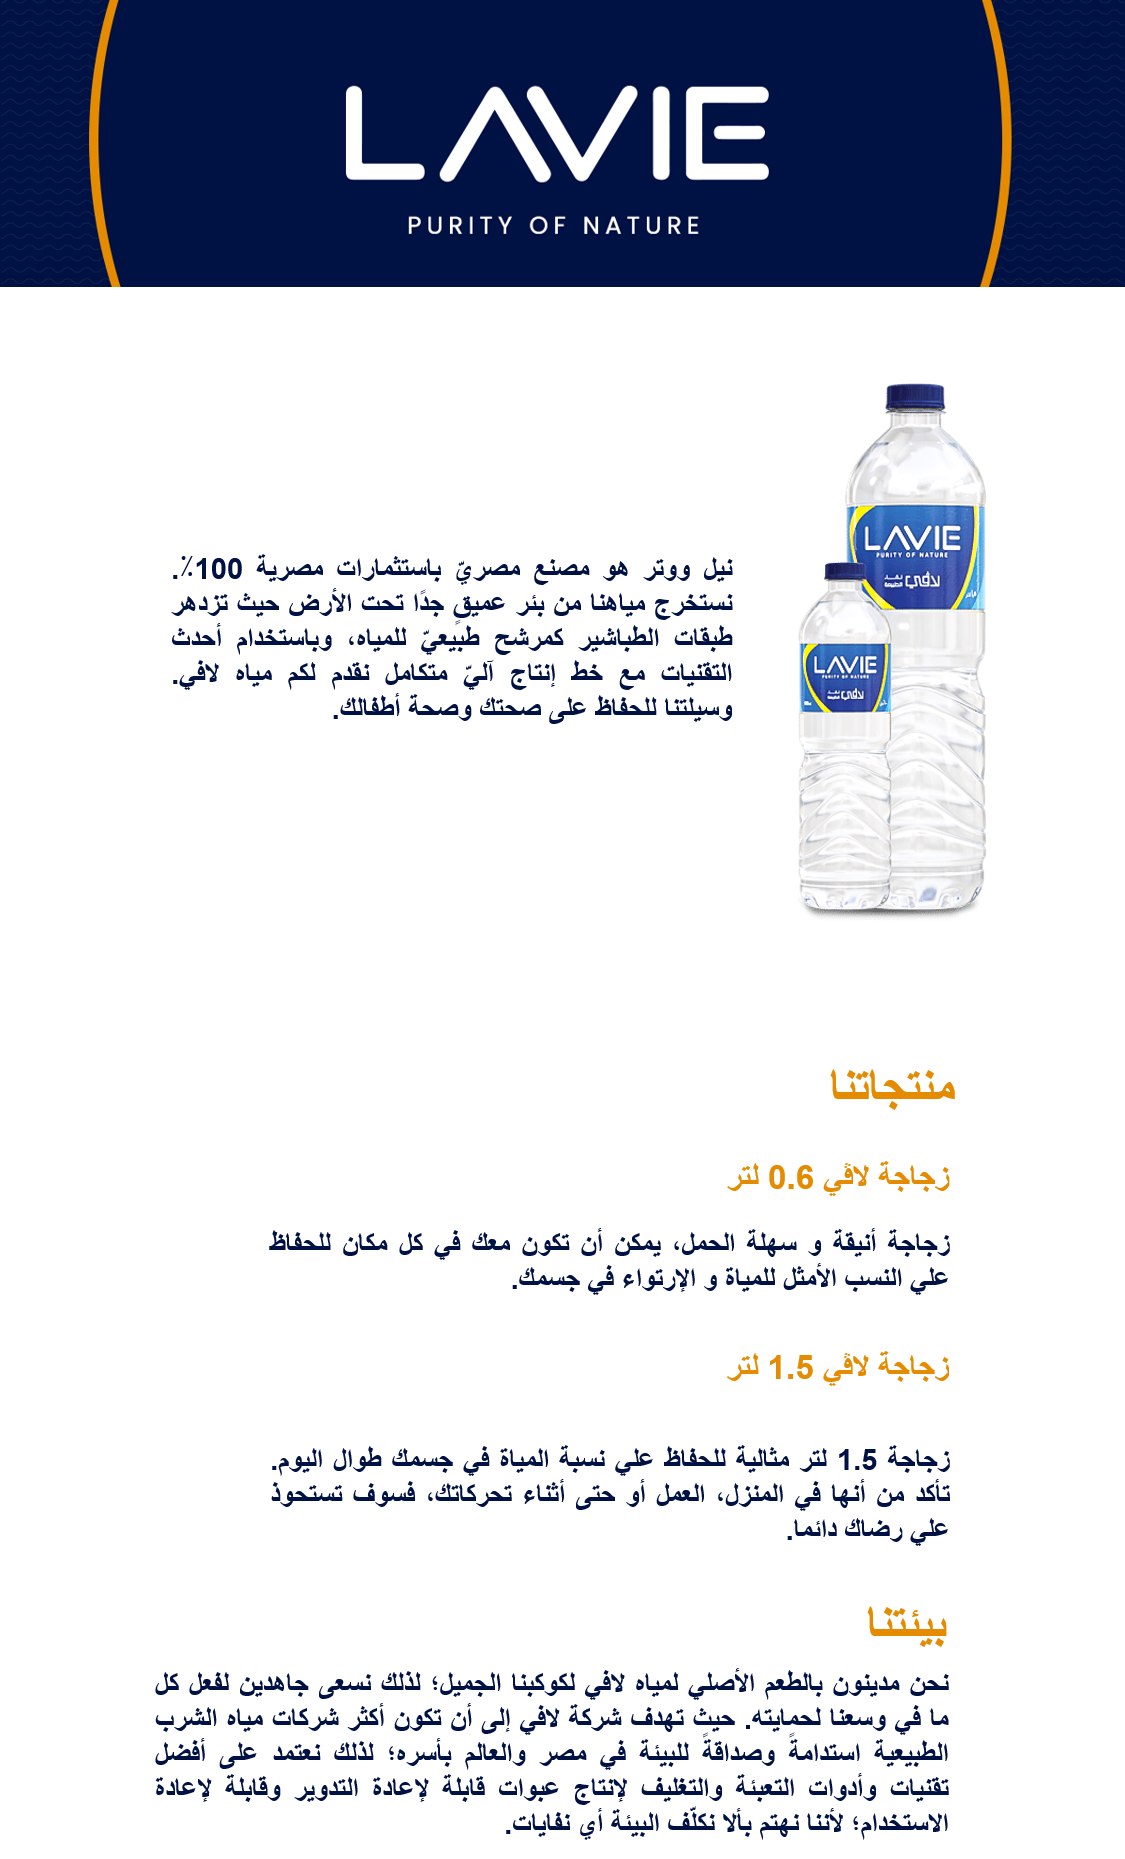 مياه شرب معدنية. نيل ووتر هو مصنع مصريّ باستثمارات مصرية 100٪. نستخرج مياهنا من بئر عميقٍ جدًا تحت الأرض حيث تزدهر طبقات الطباشير كمرشح طبيعيّ للمياه، وباستخدام أحدث التقنيات مع خط إنتاج آليّ متكامل نقدم لكم مياه لافي. وسيلتنا للحفاظ على صحتك وصحة أطفالك.